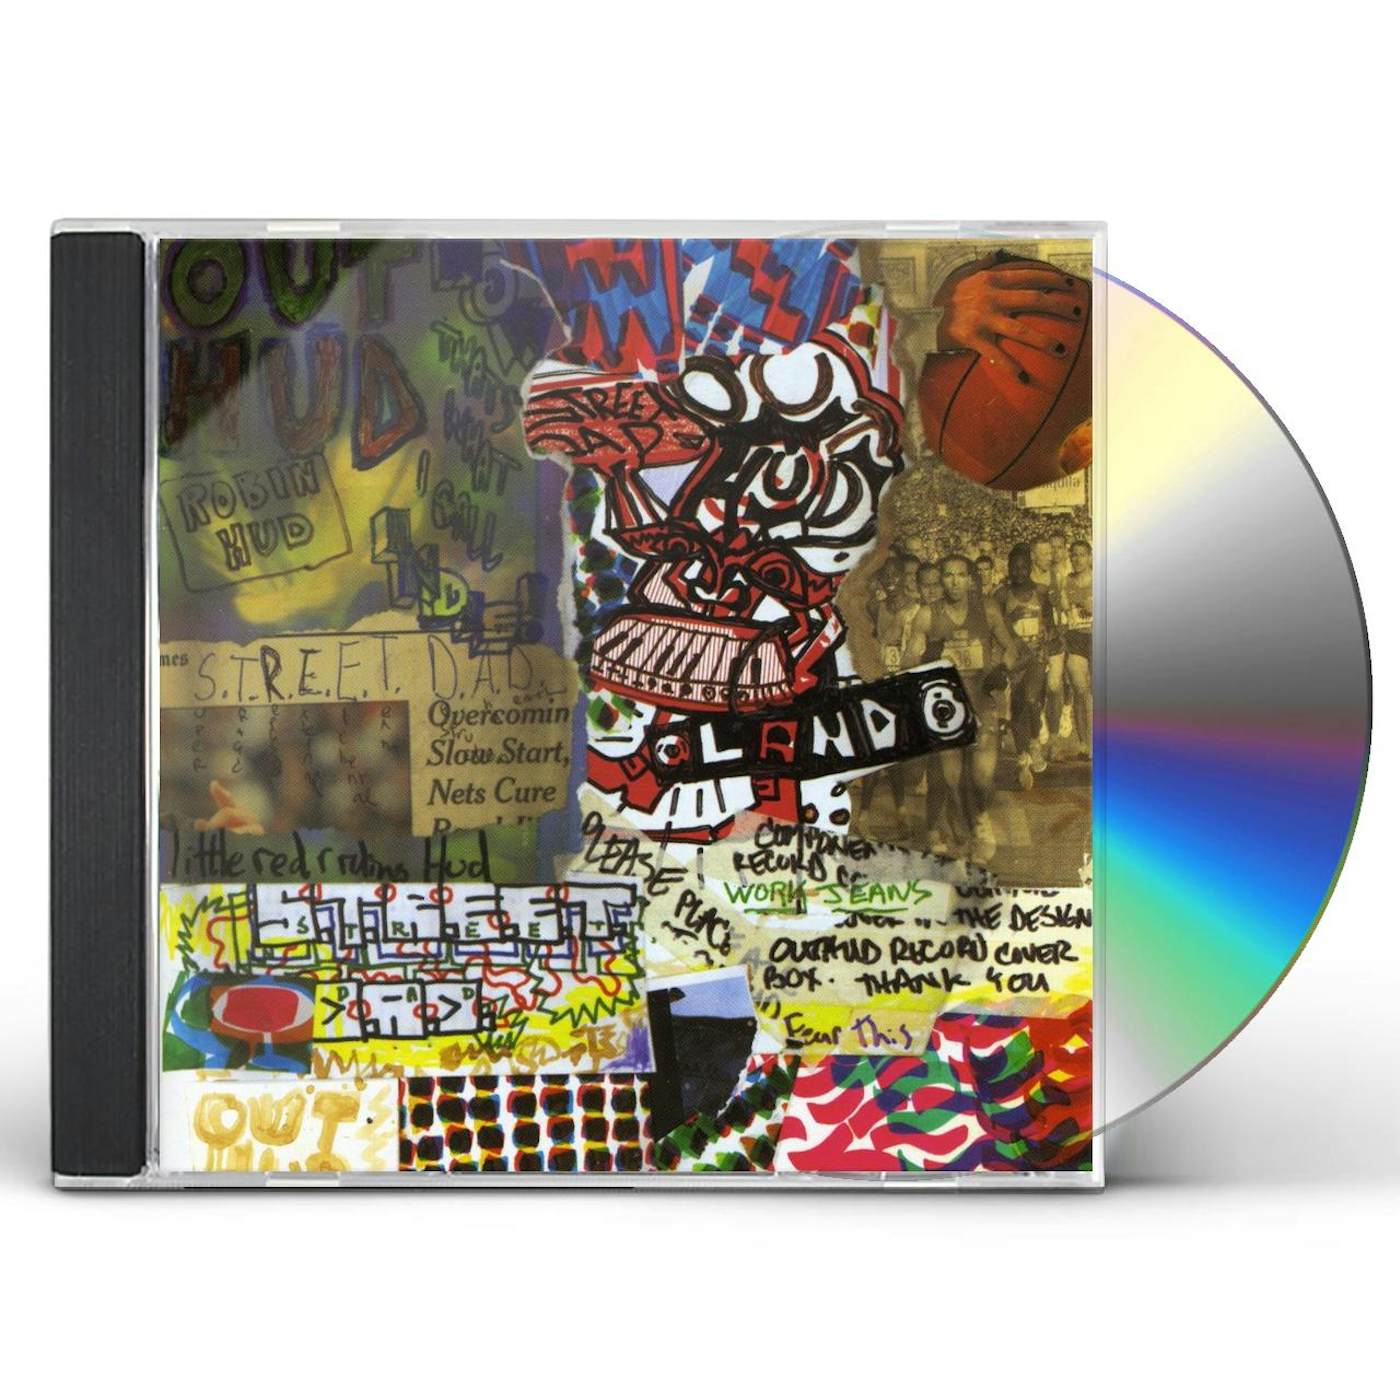 Out Hud S.T.R.E.E.T. D.A.D. CD